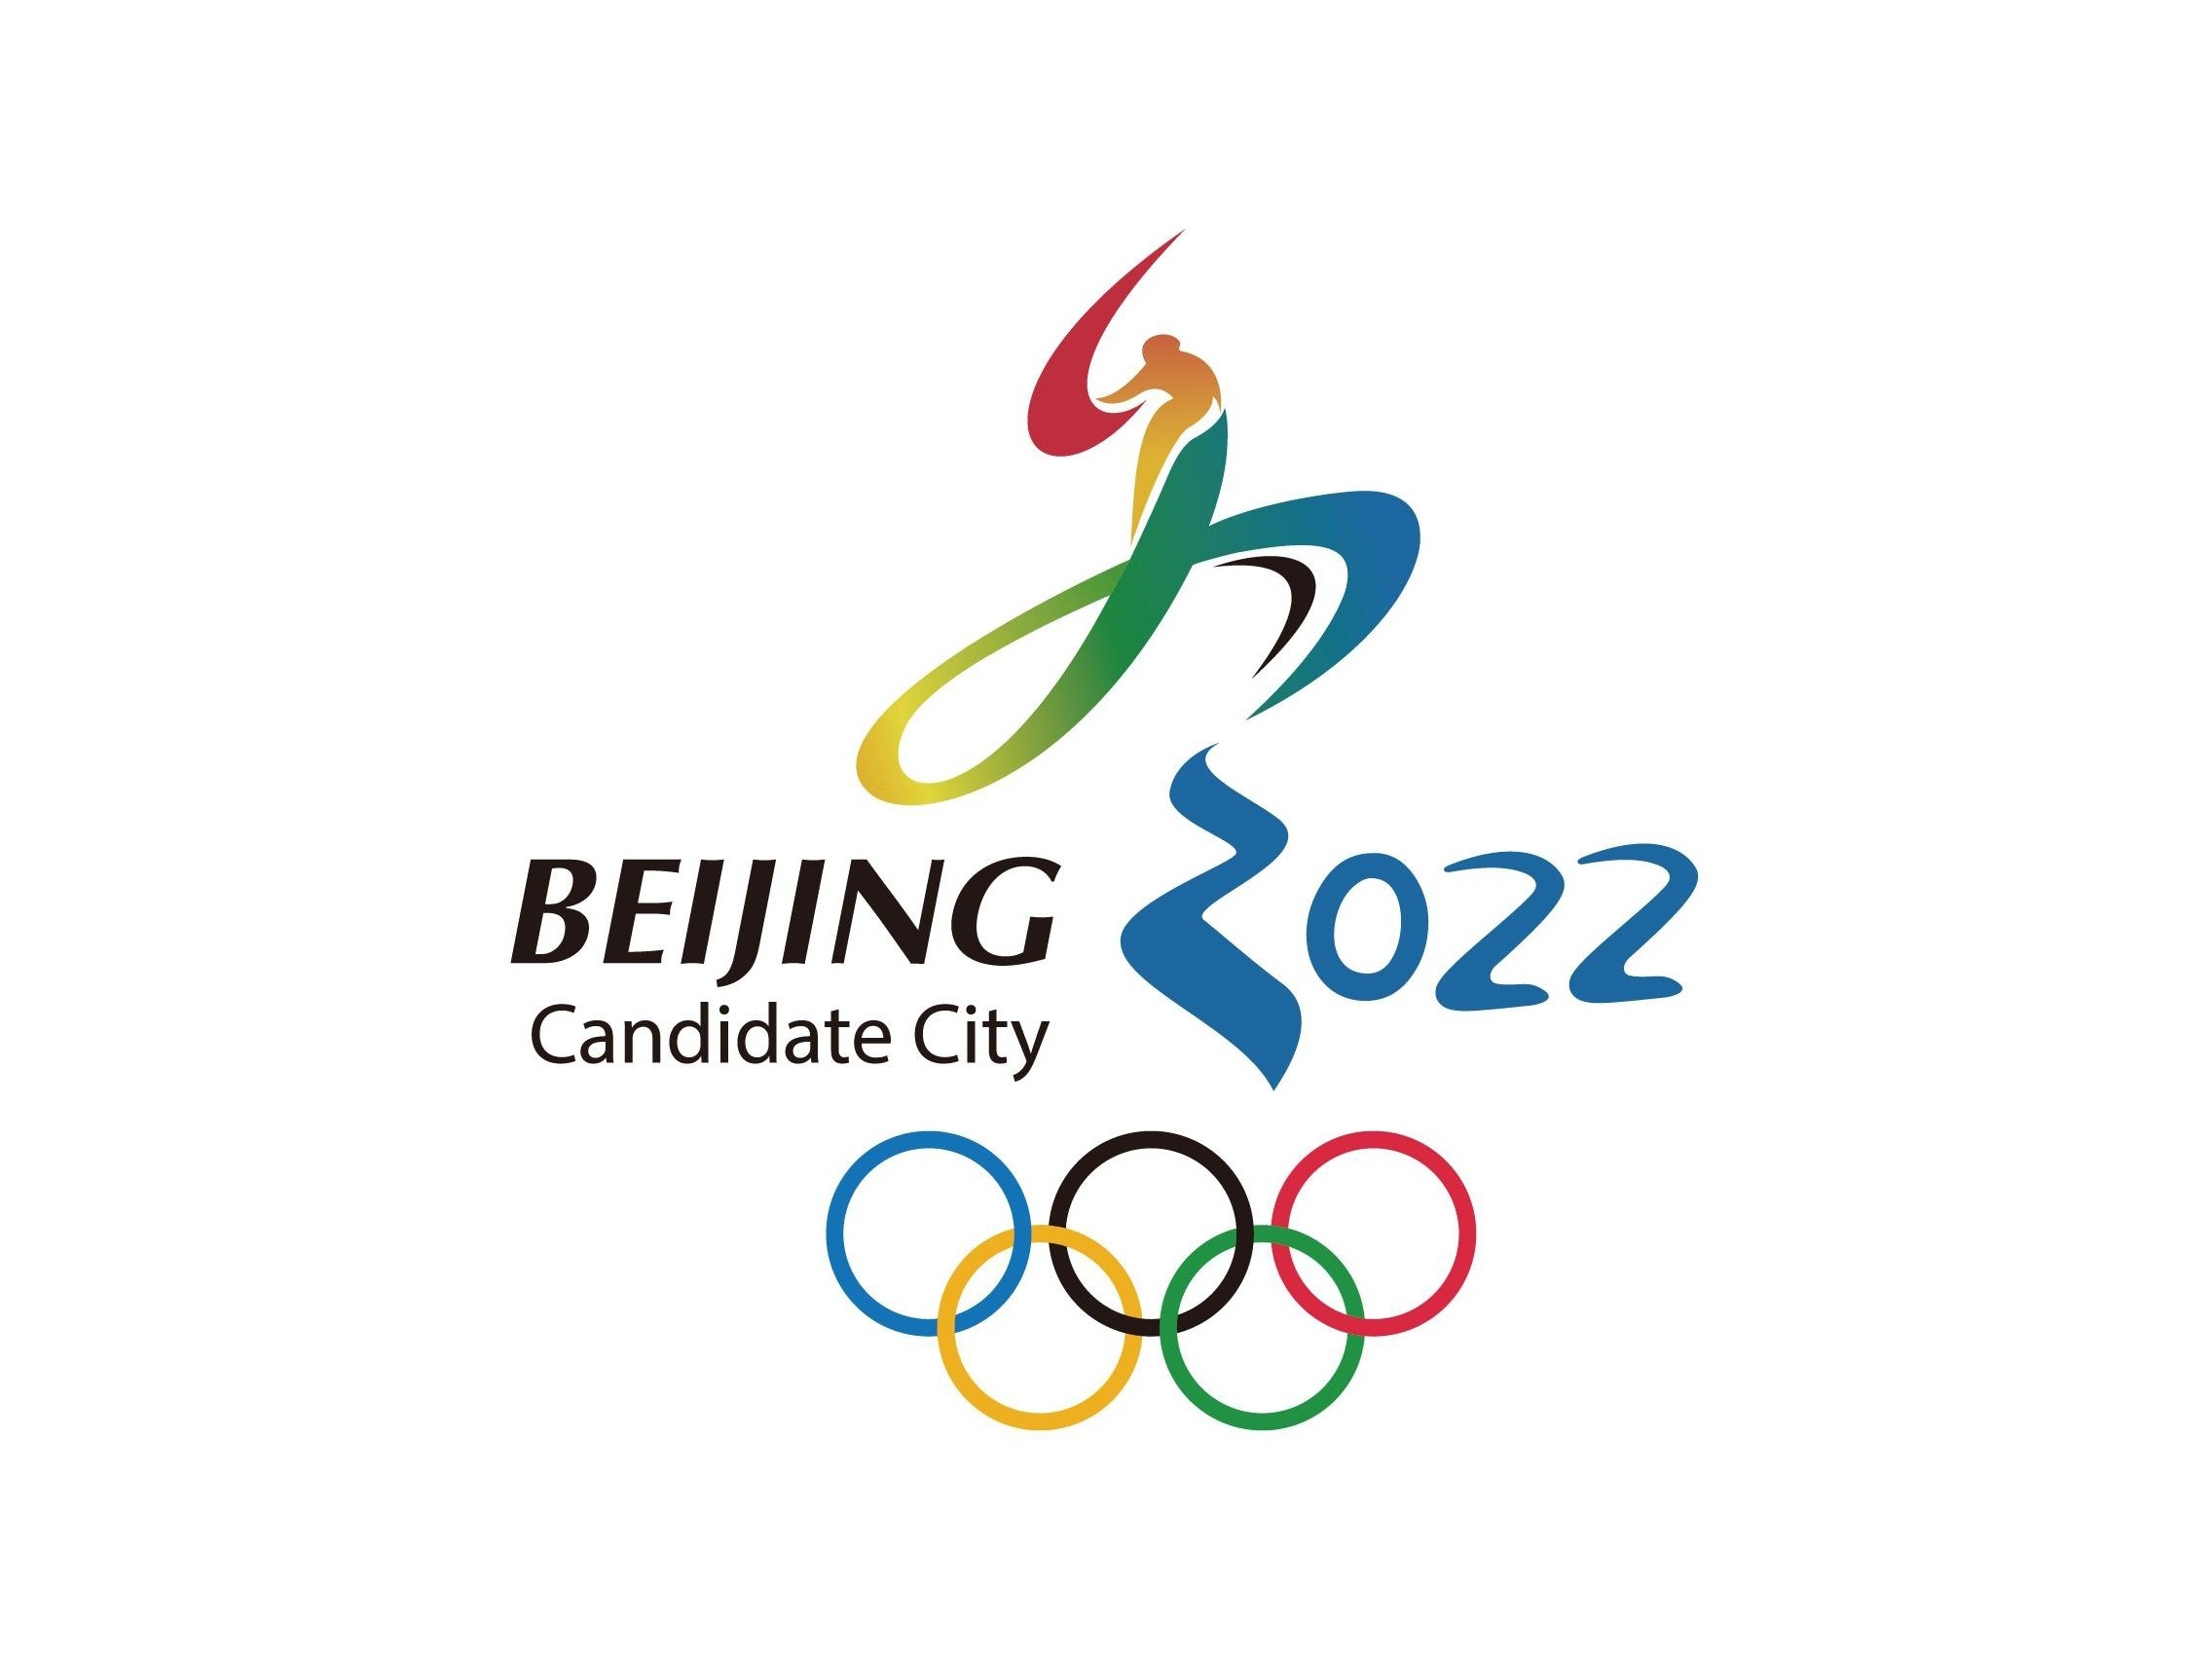 Pekin, Igrzyska Olimpijskie